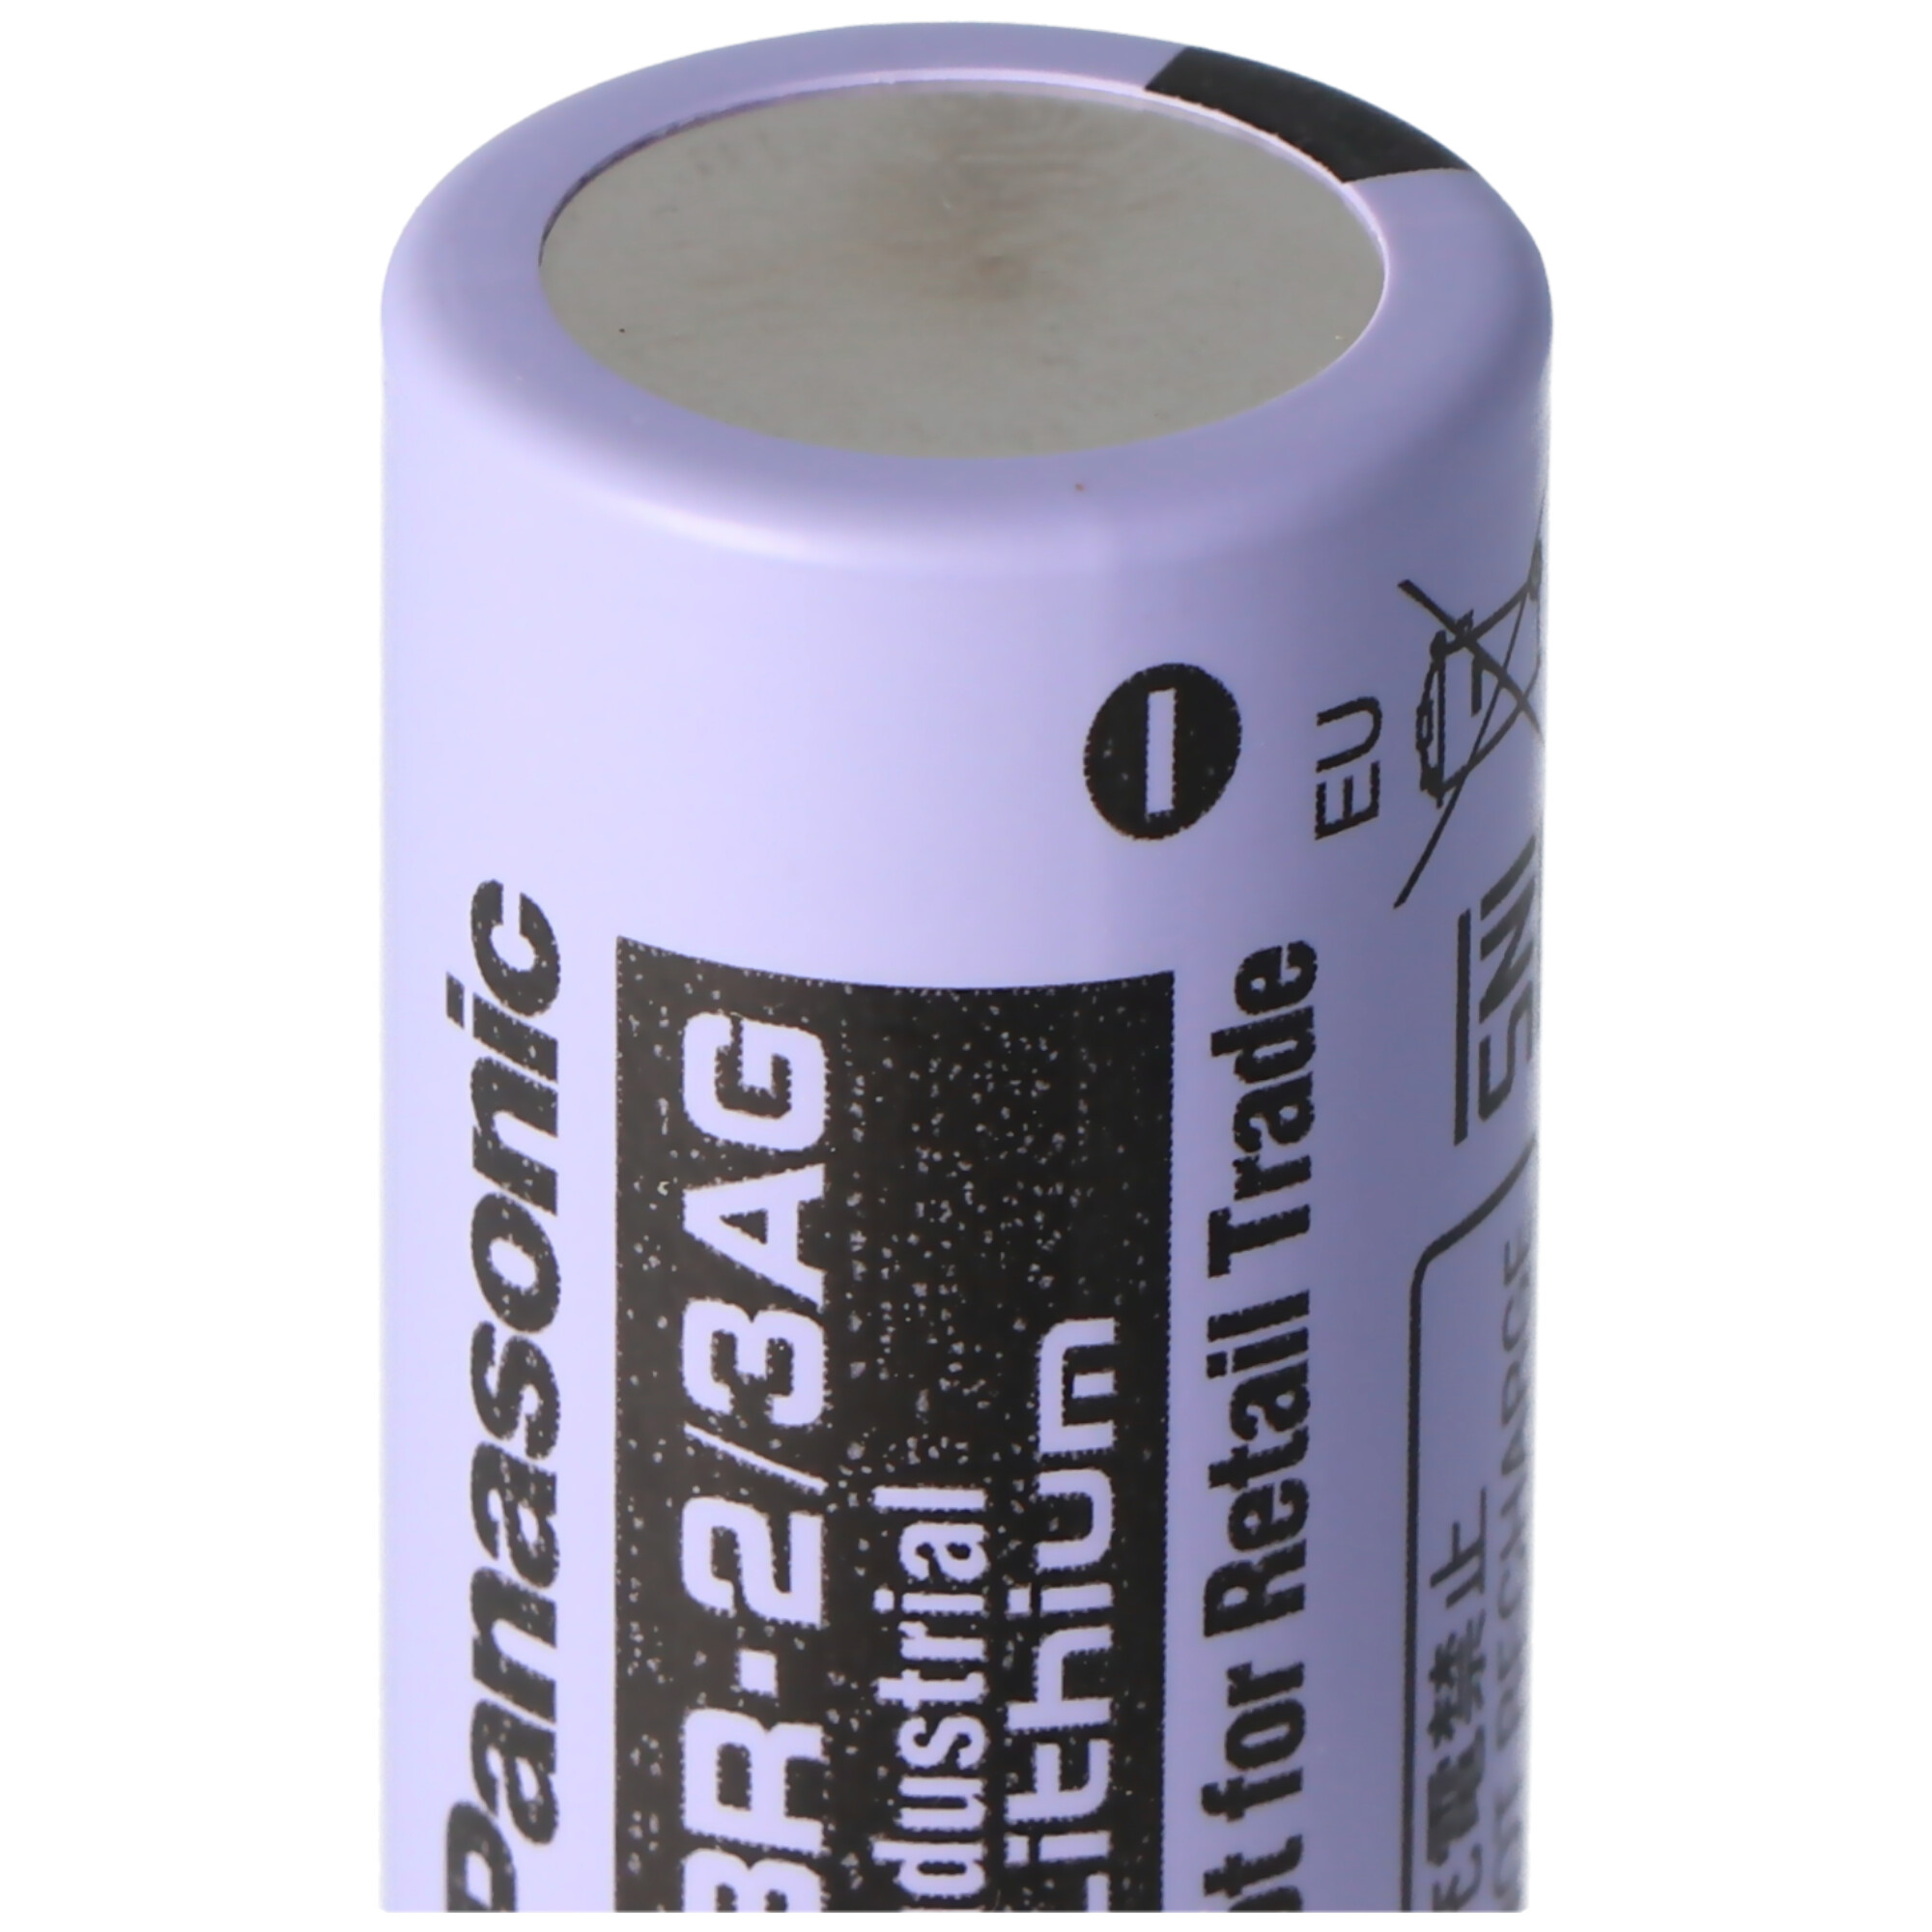 Panasonic Lithium 3V Batterie BR 2/3AGN 2/3 A Hochtemperaturzelle